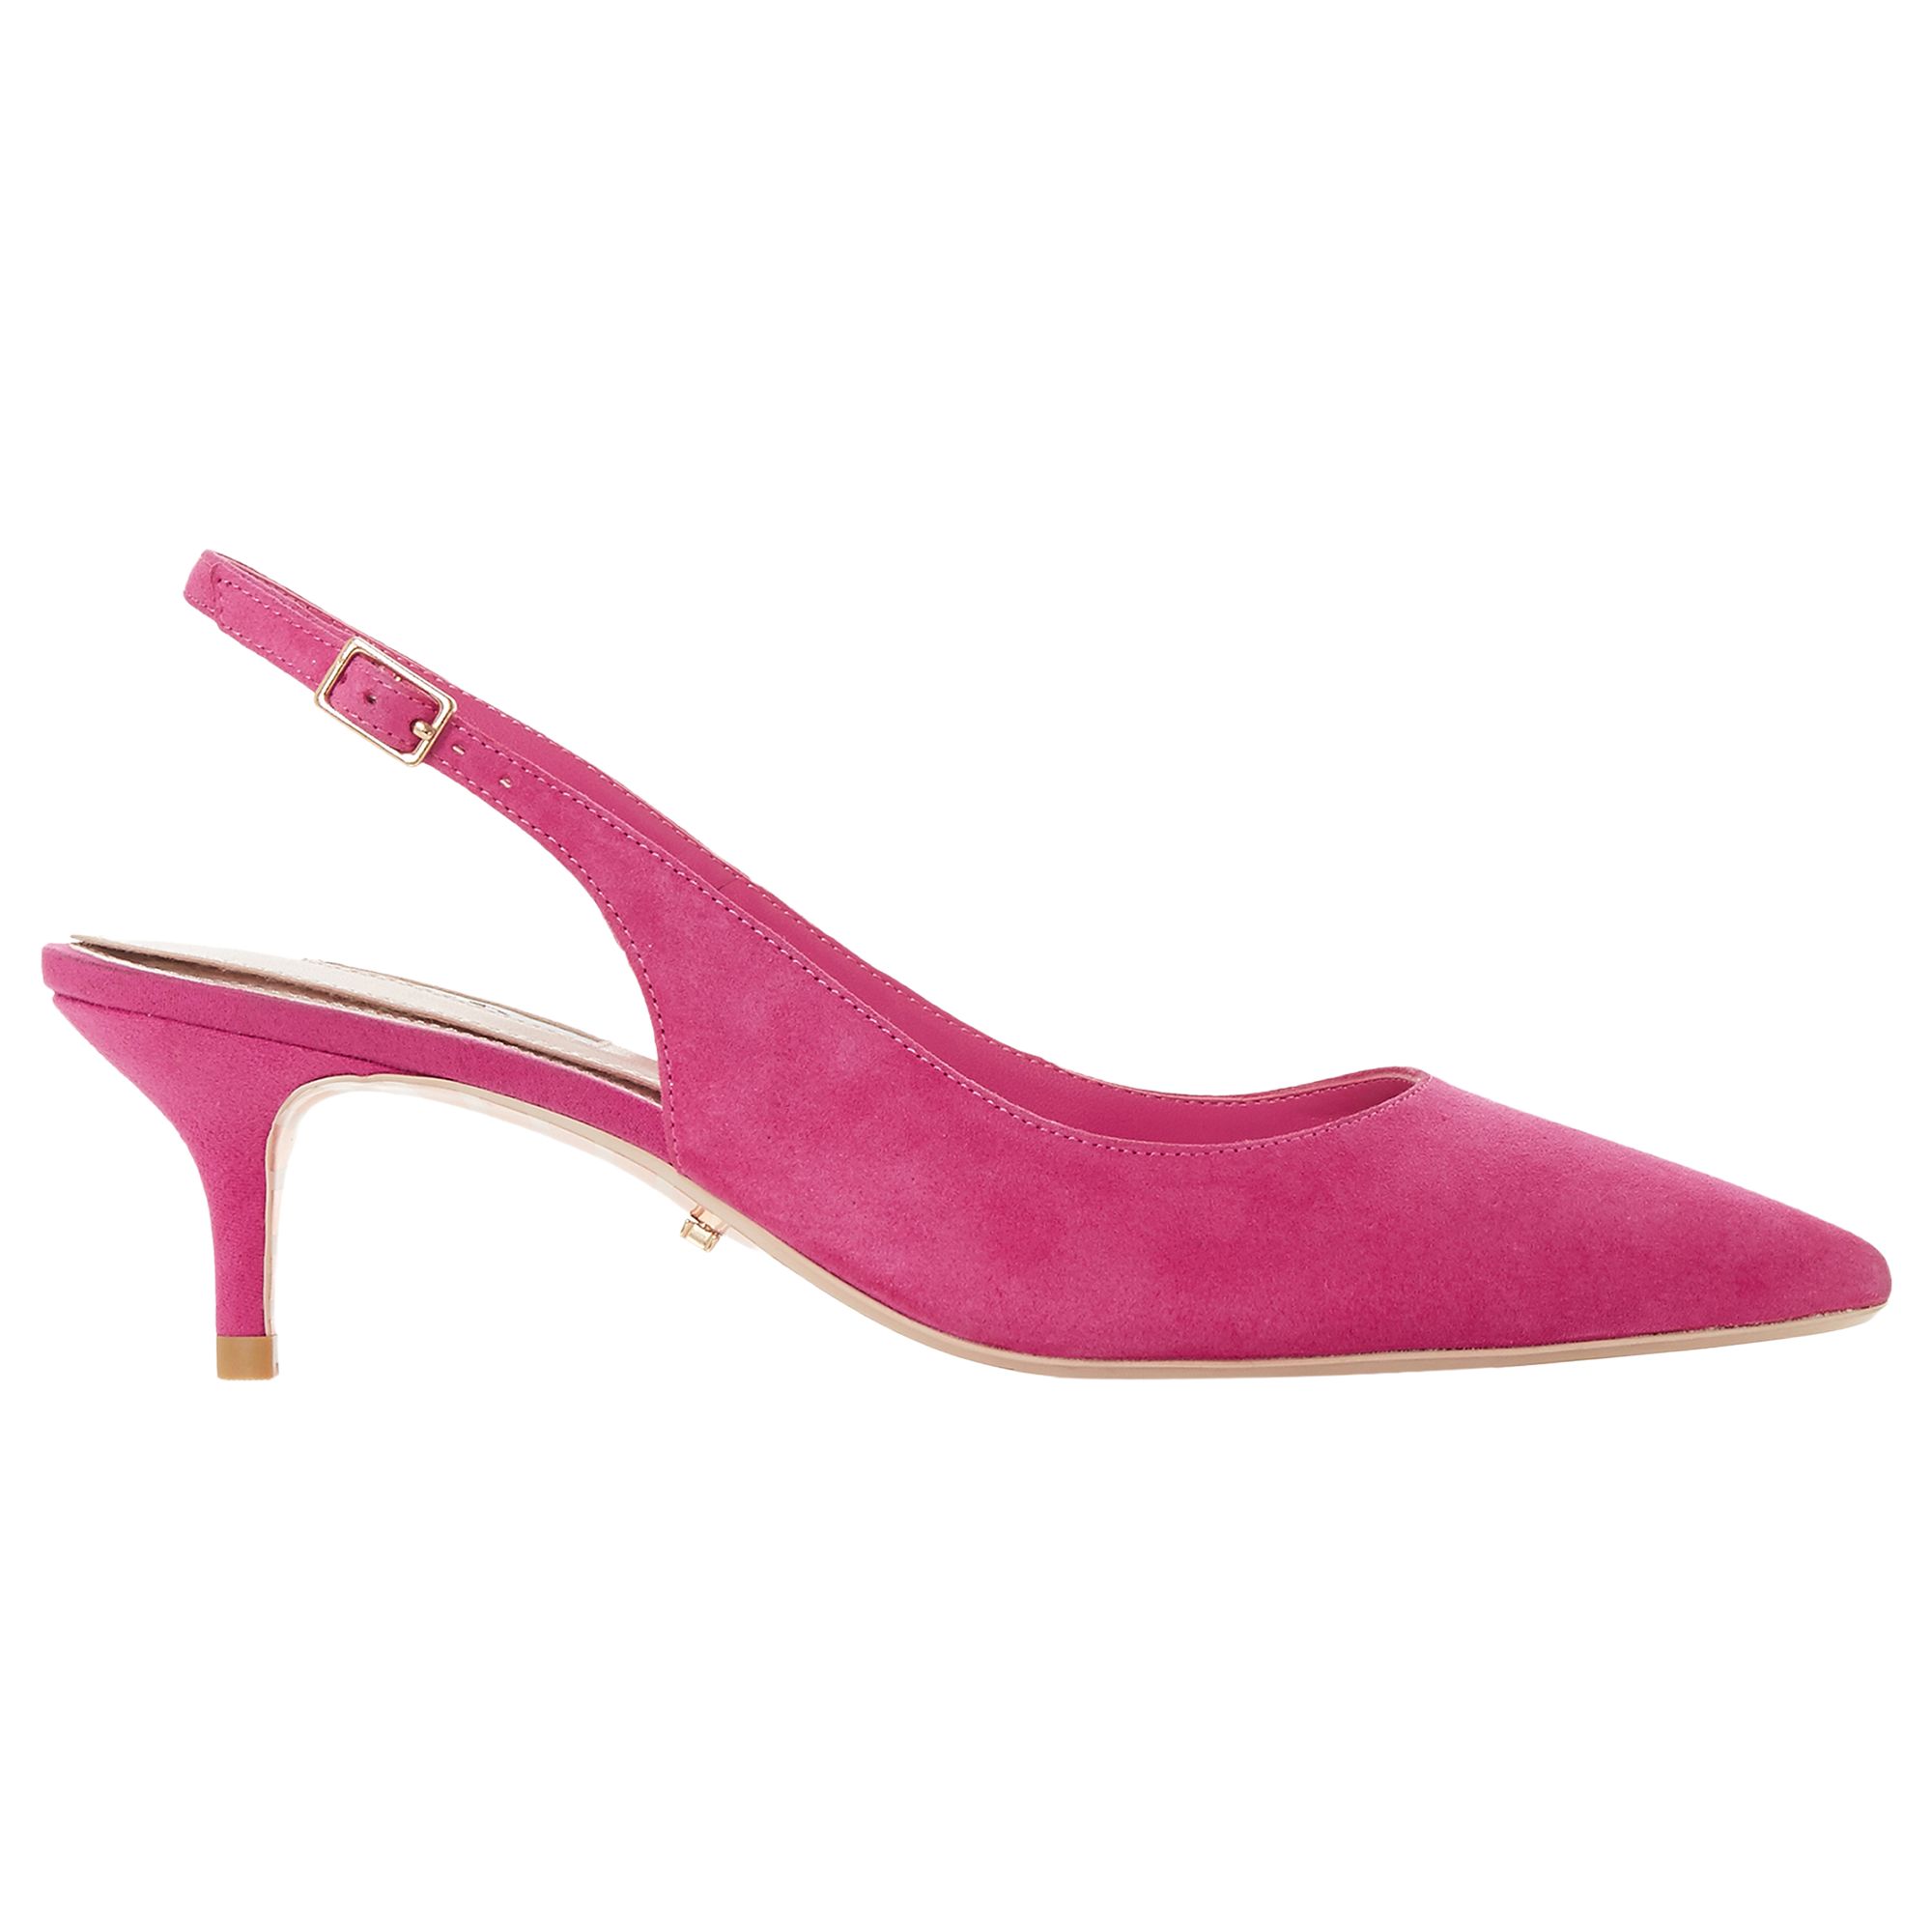 Dune Casandra Kitten Heel Slingback Court Shoes, Pink Suede, 3